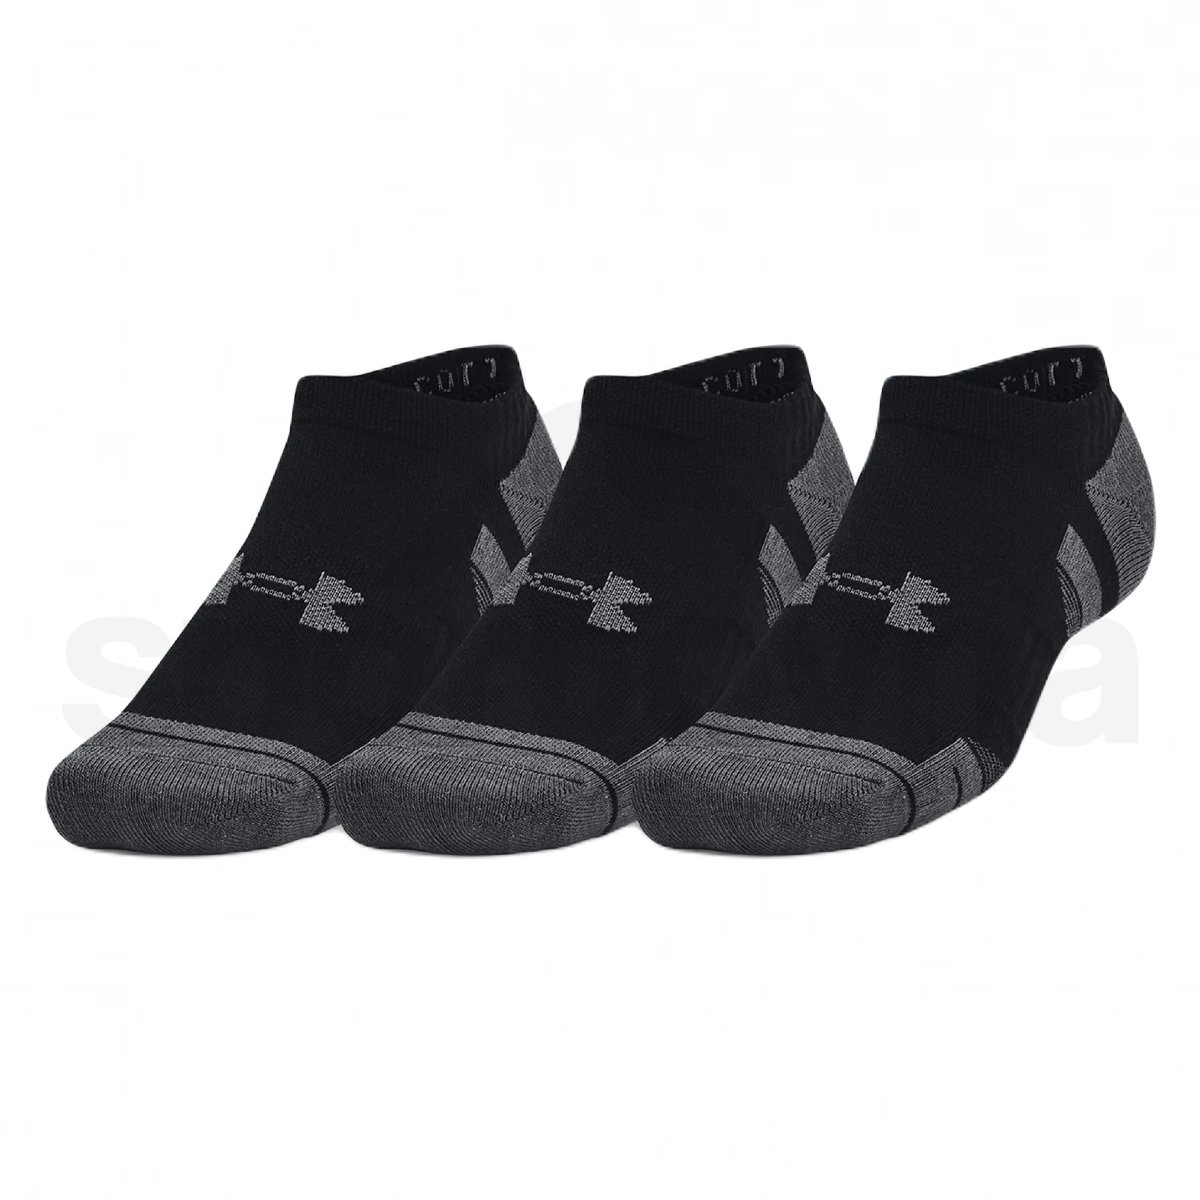 Ponožky Under Armour Performance Cotton 3pk NS - černá